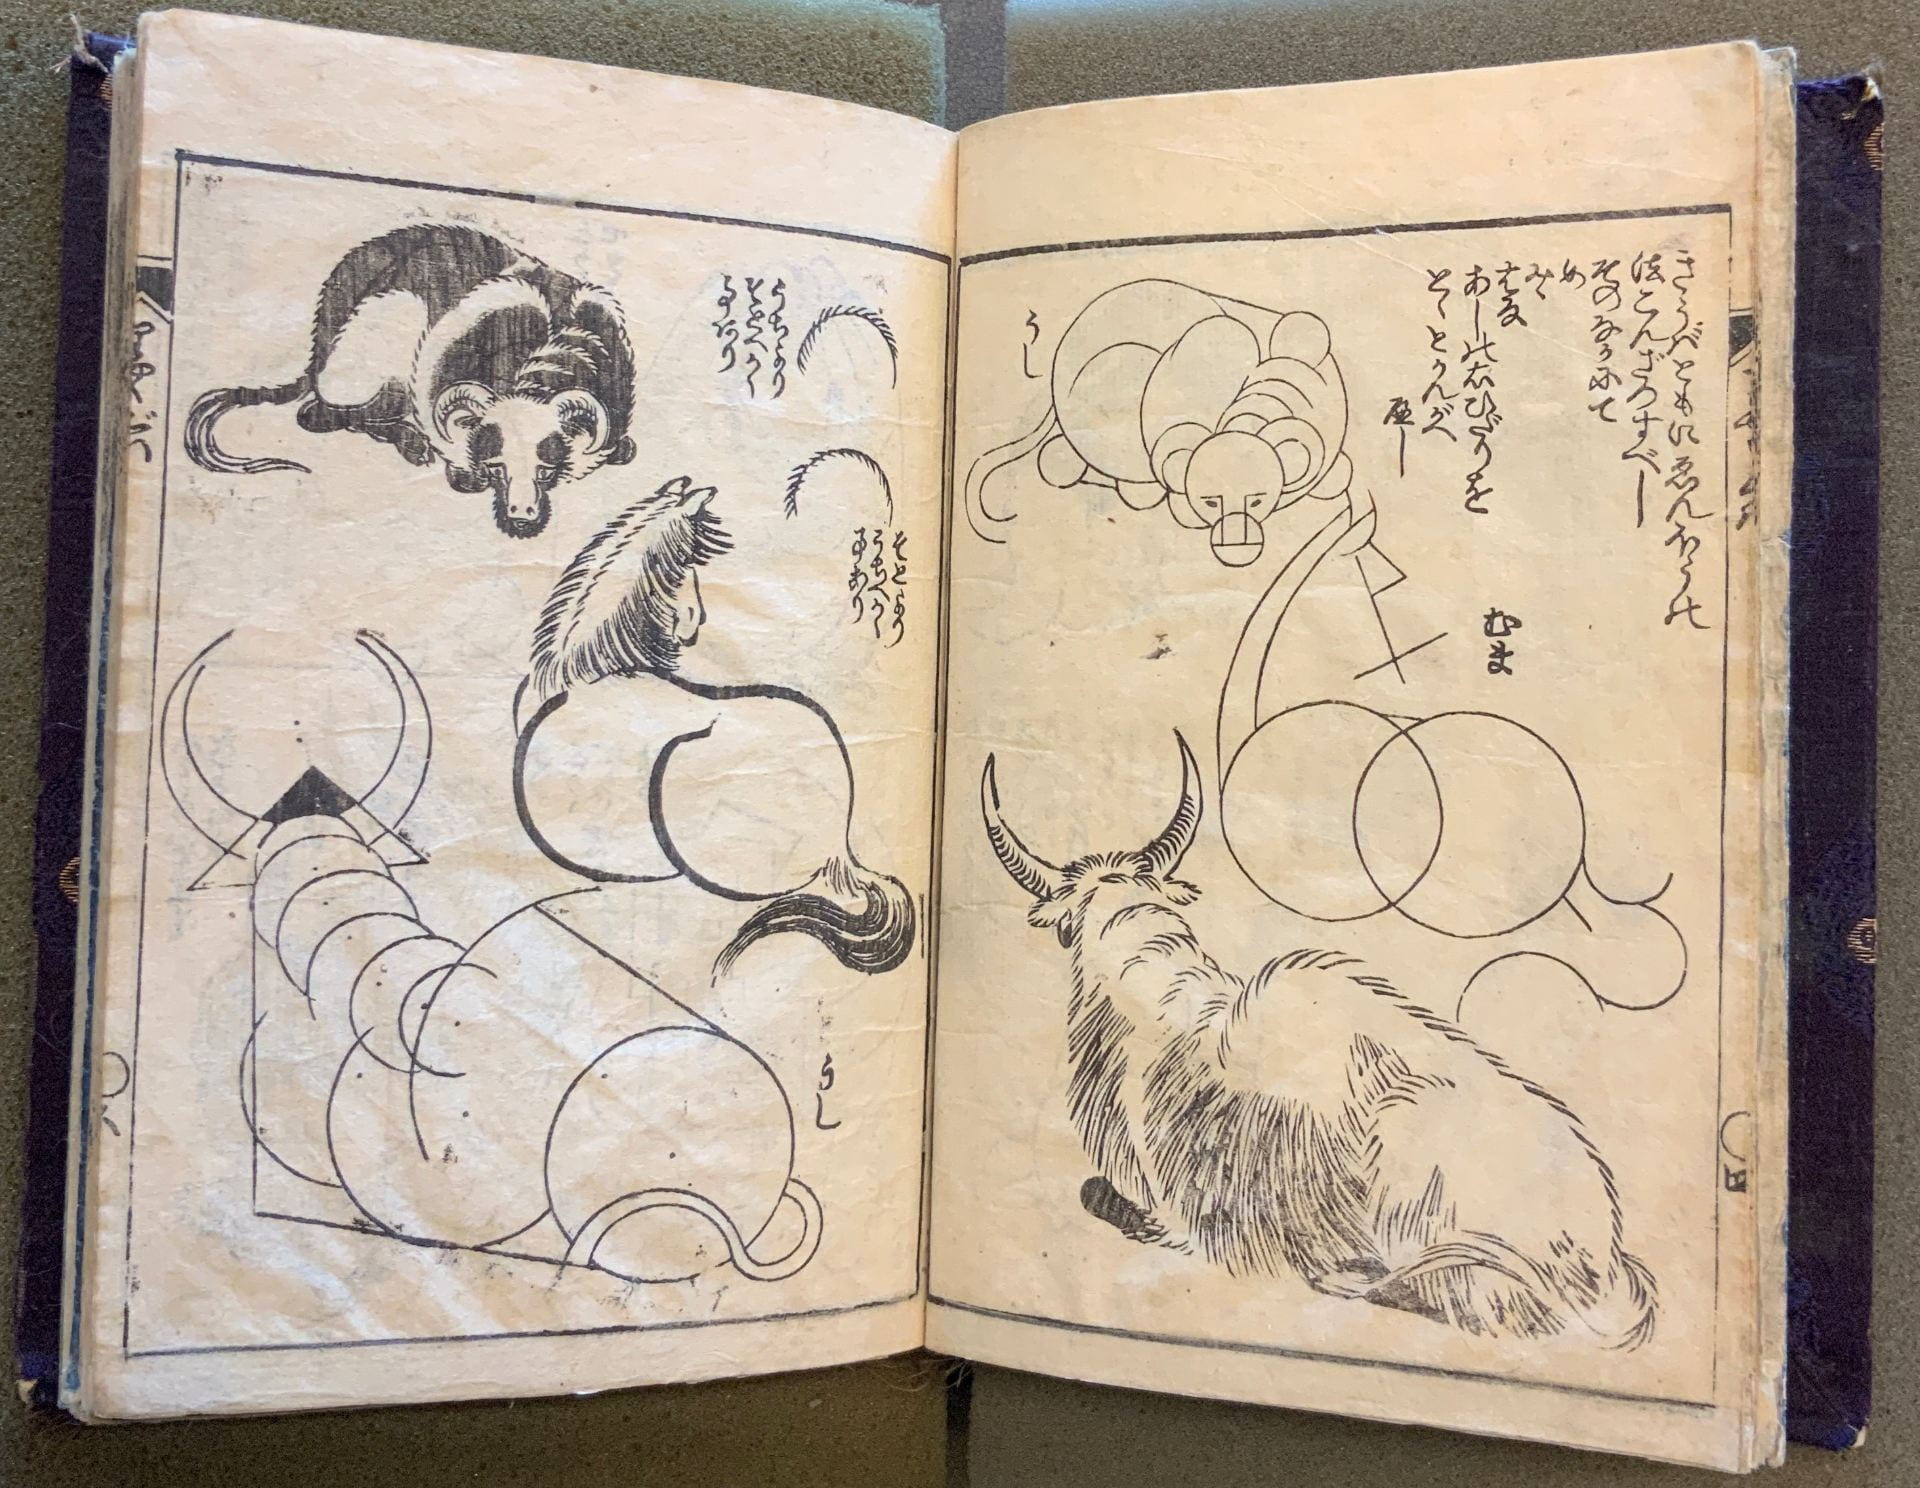 KATSUSHIKA HOKUSAI 葛飾北斎, RYAKUGA HAYAOSHIE 略画早指南, 1812-1814